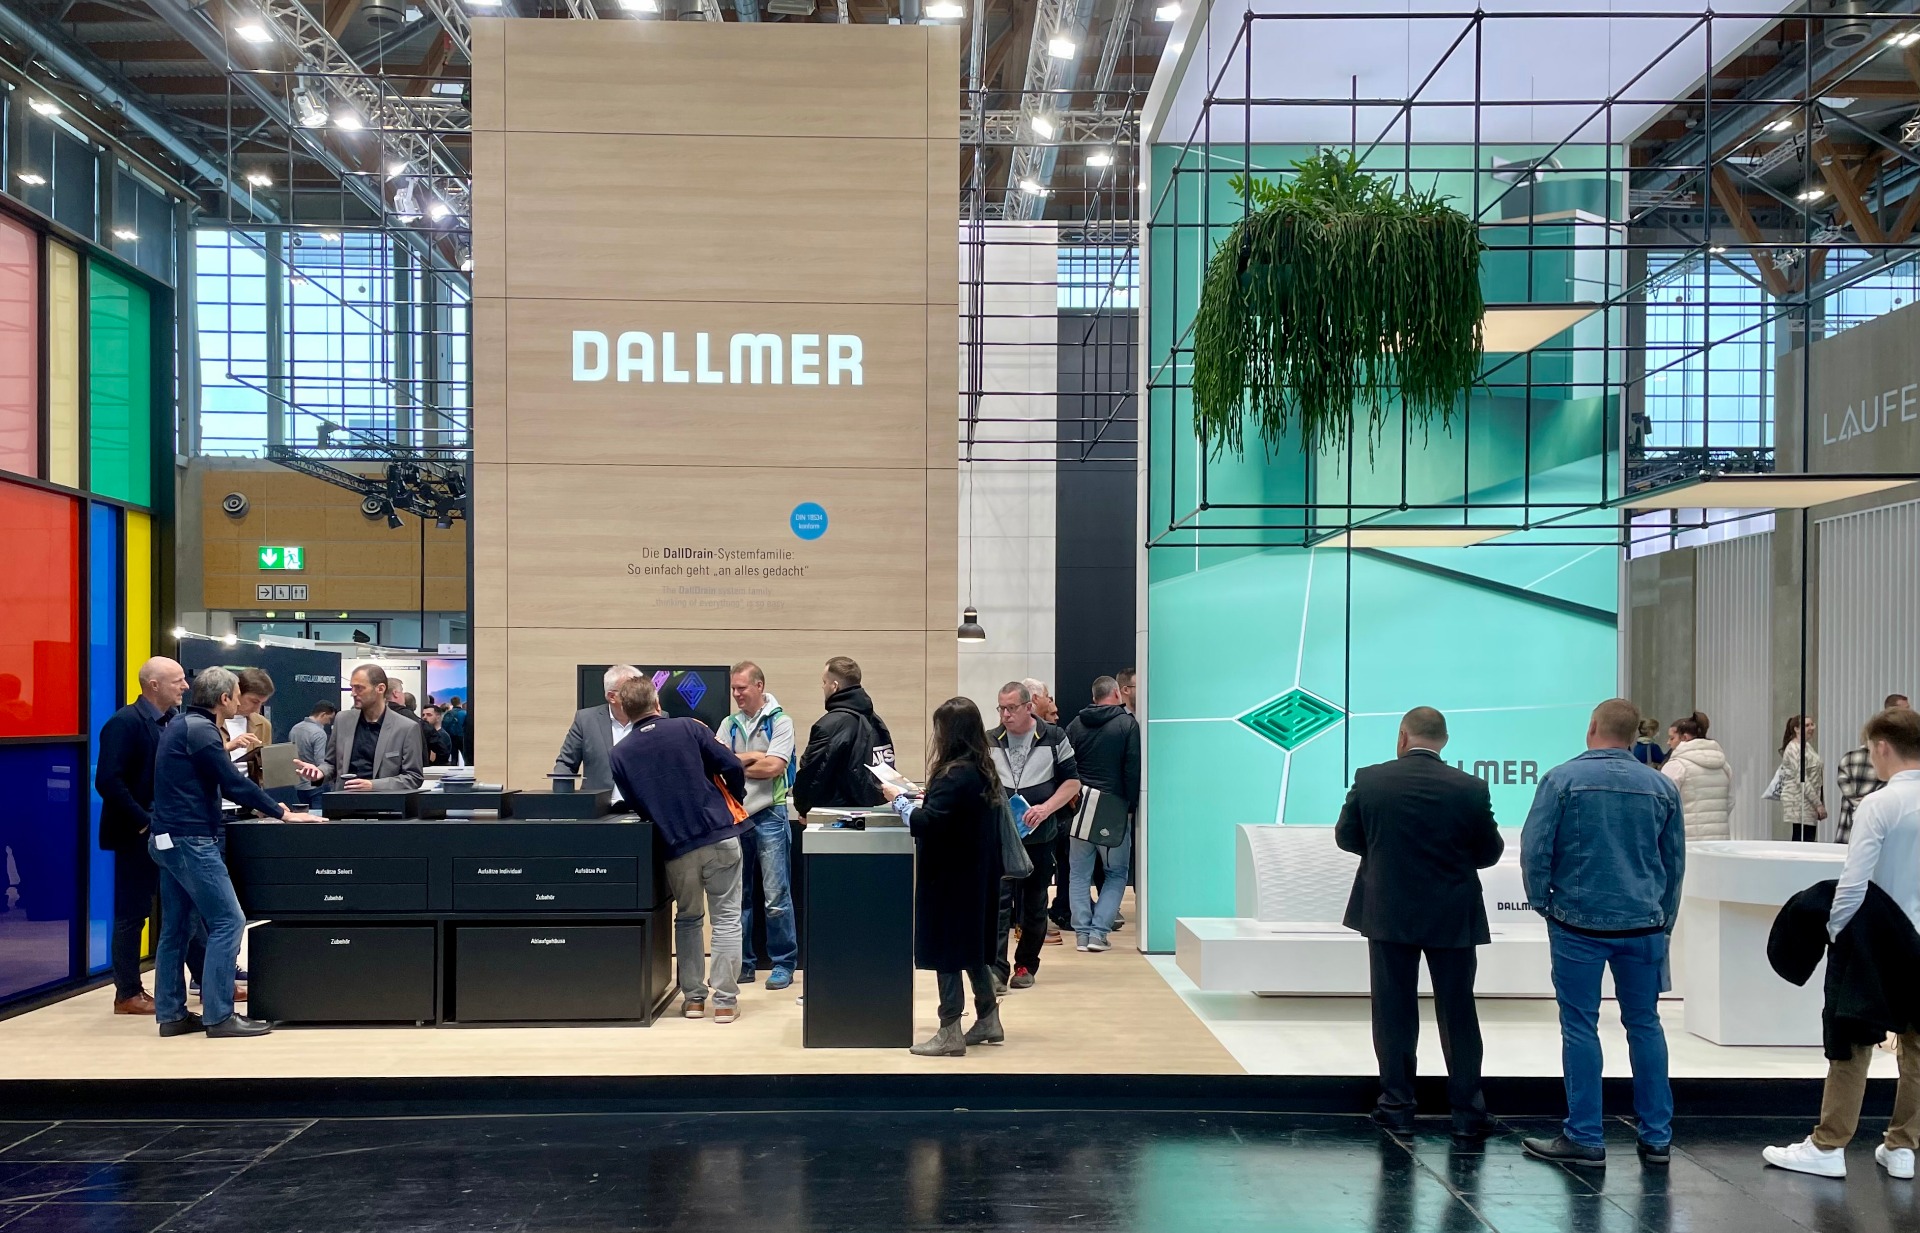 Nach dem großen Zuspruch auf der IFH kann es das Messeteam kaum erwarten, auf der SHK die neuen Dallmer-Produkte zu zeigen. Foto: Dallmer GmbH + Co. KG